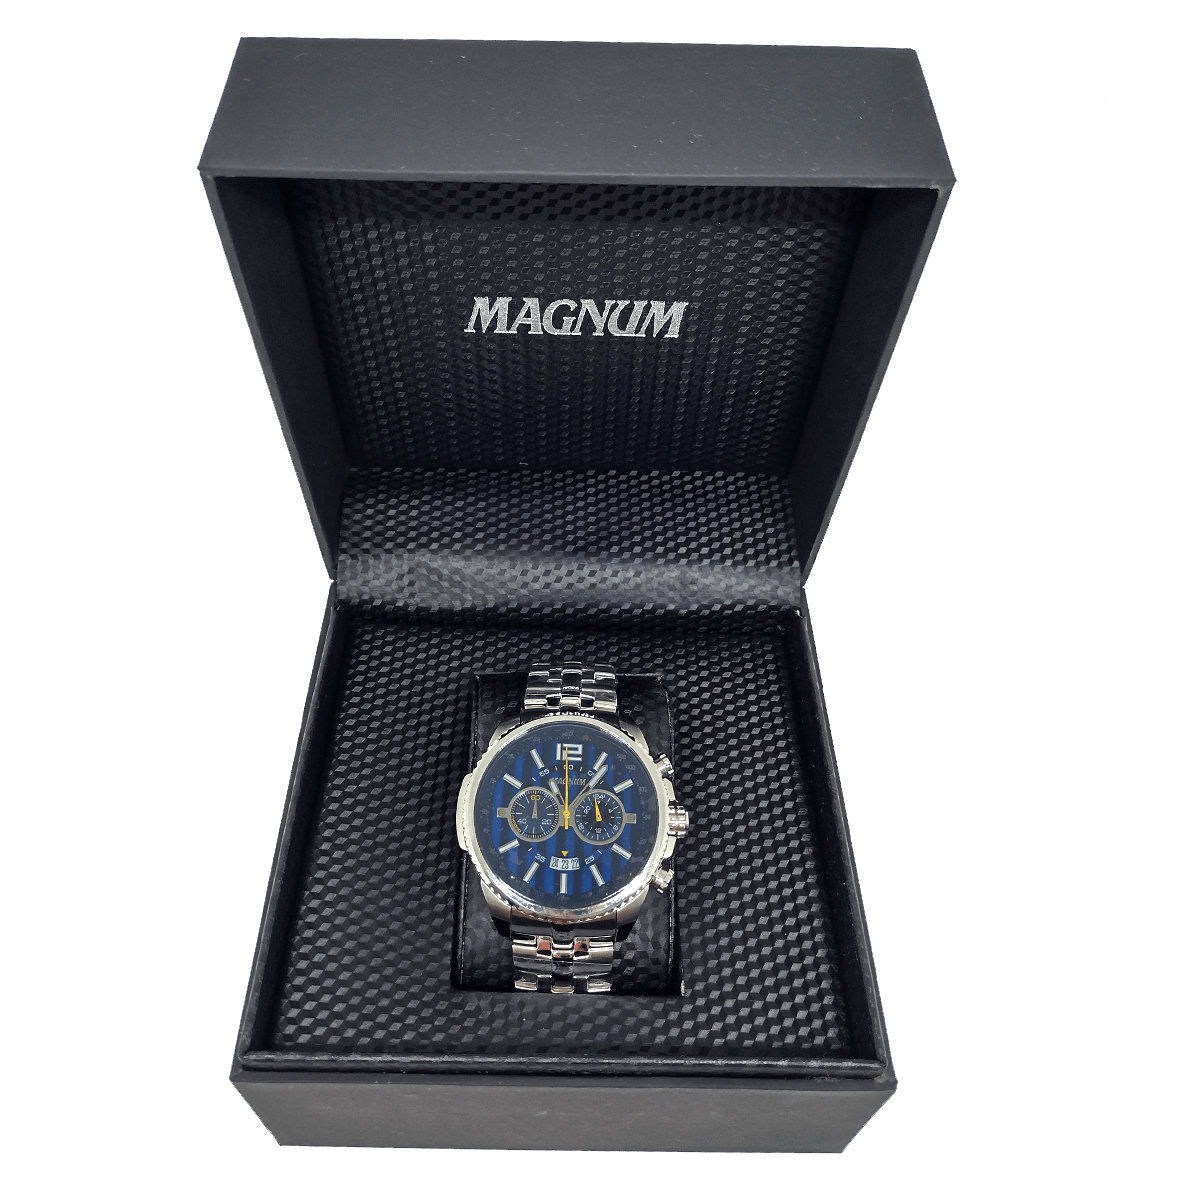 Relógio Masculino, MA31579P, Magnum. Multifunção com calendário